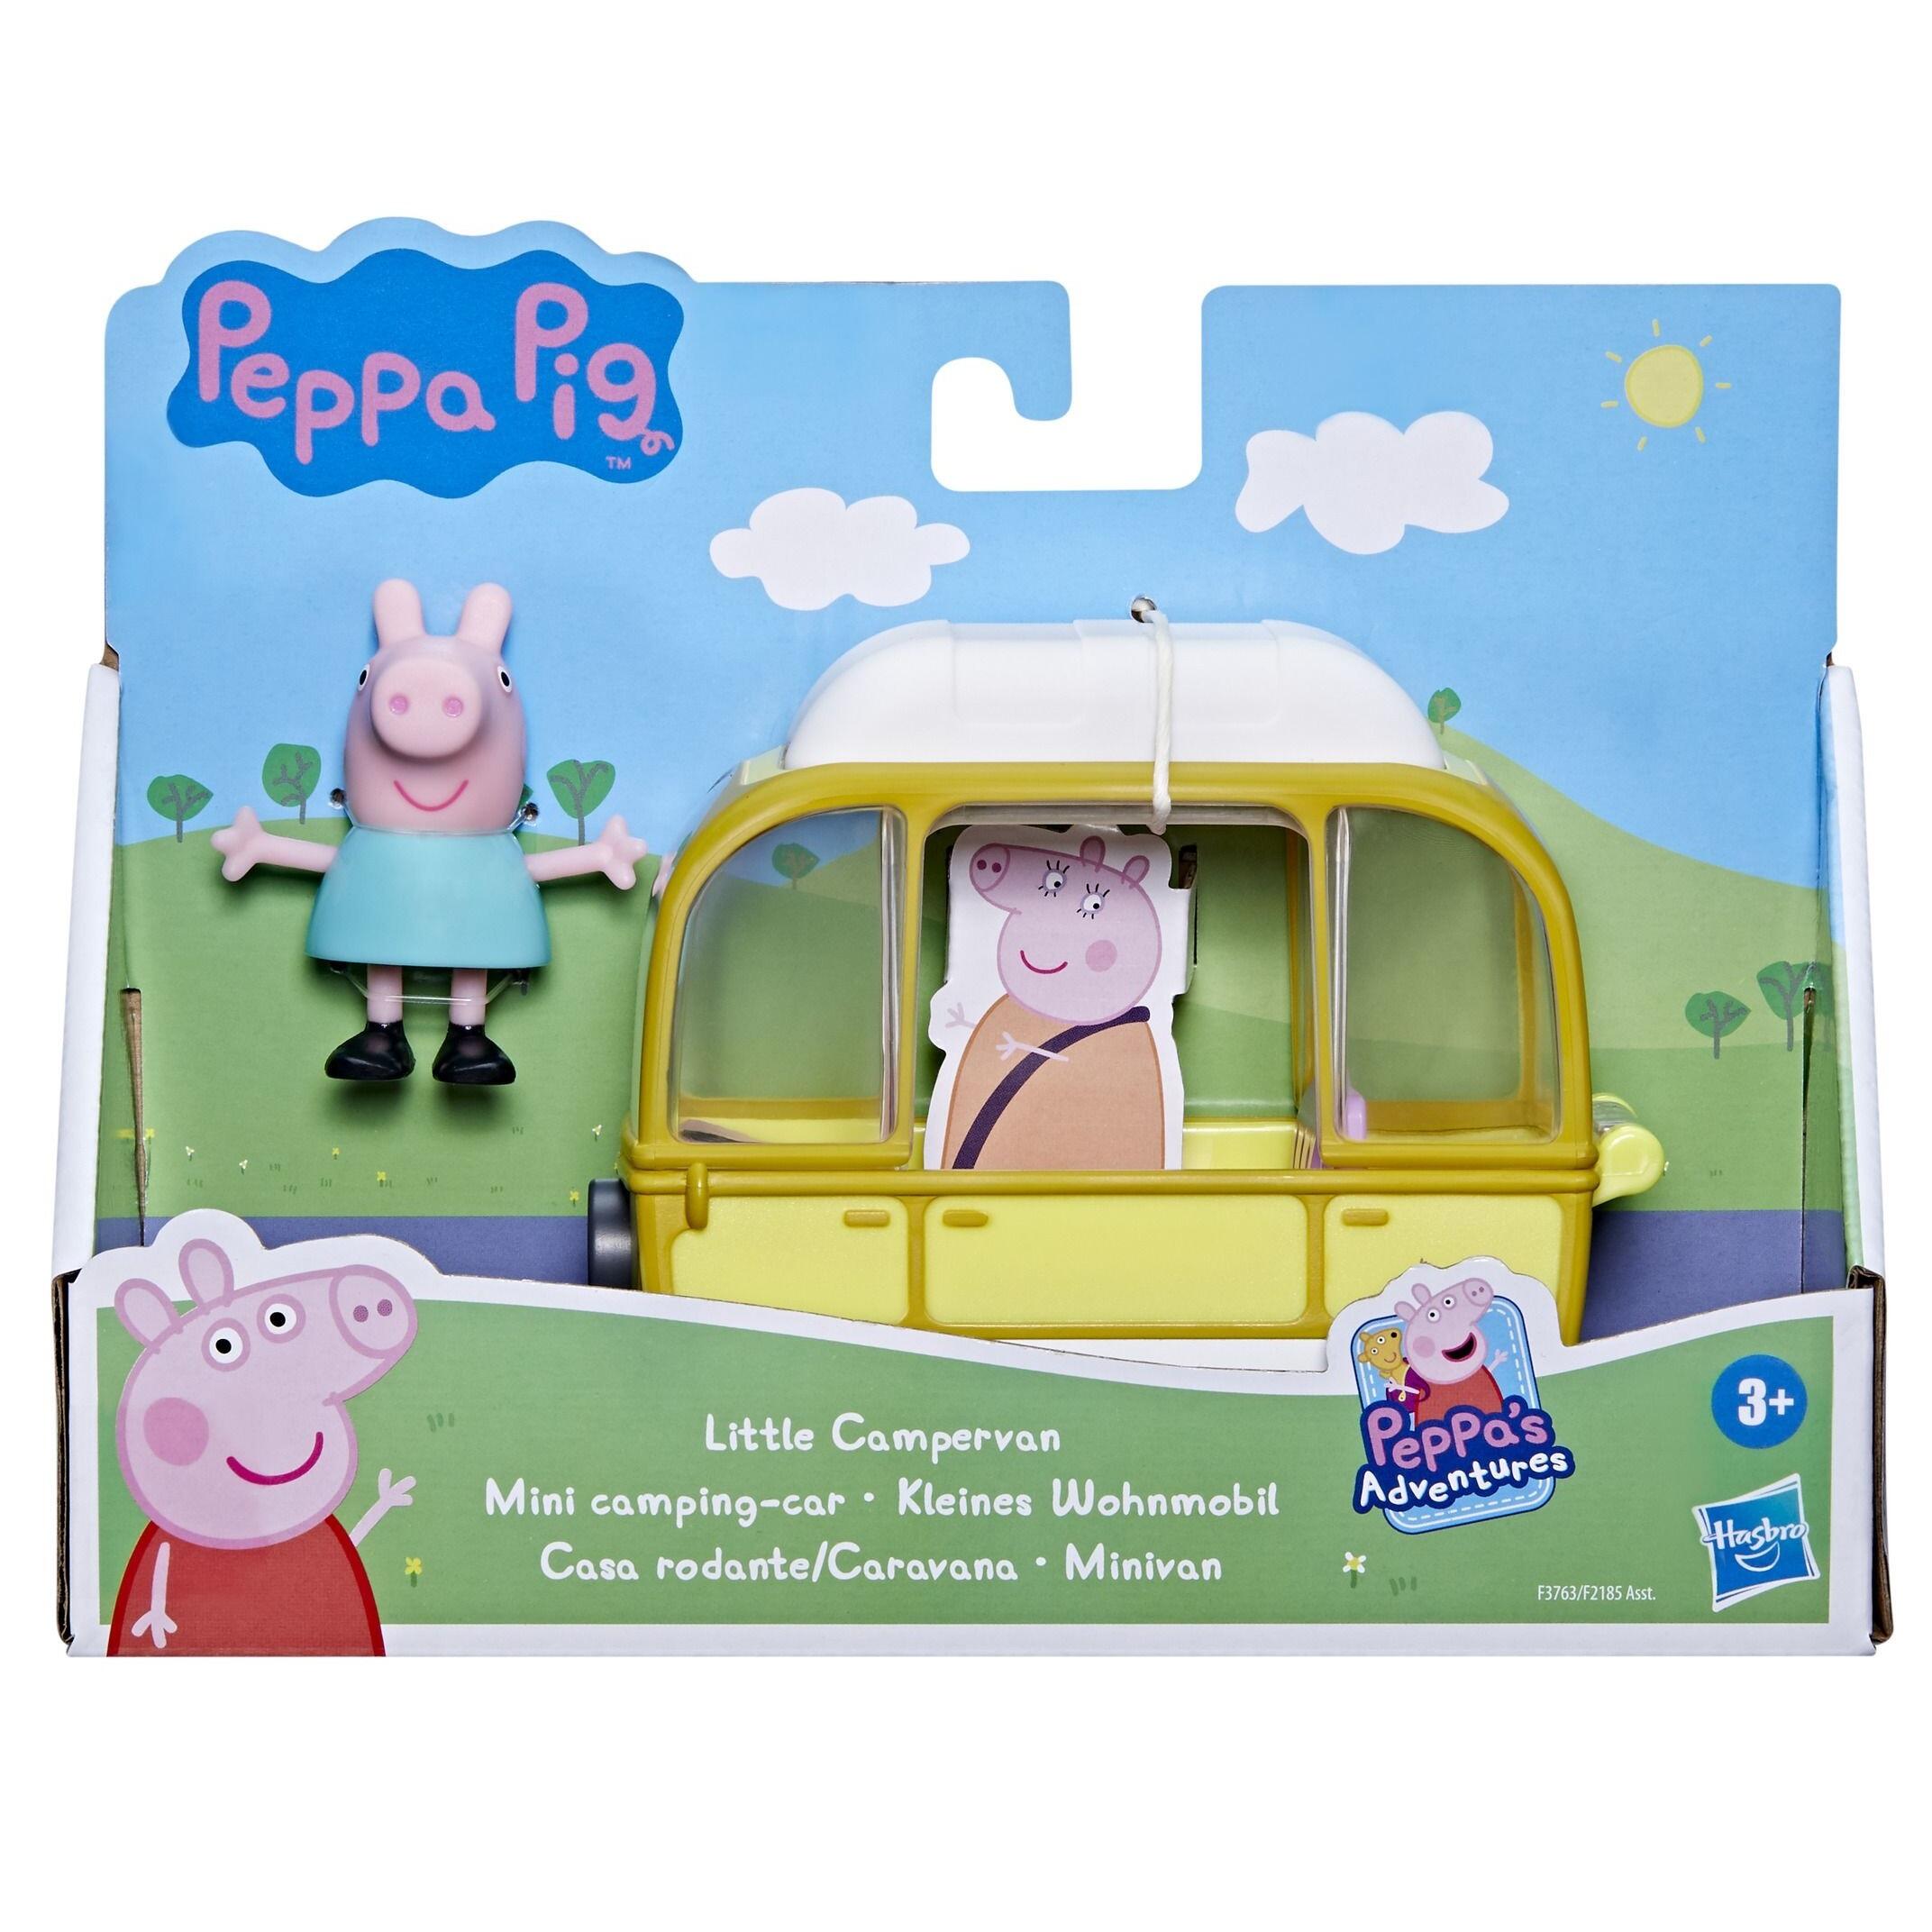 Peppa Pig Vehicles Little Campervan